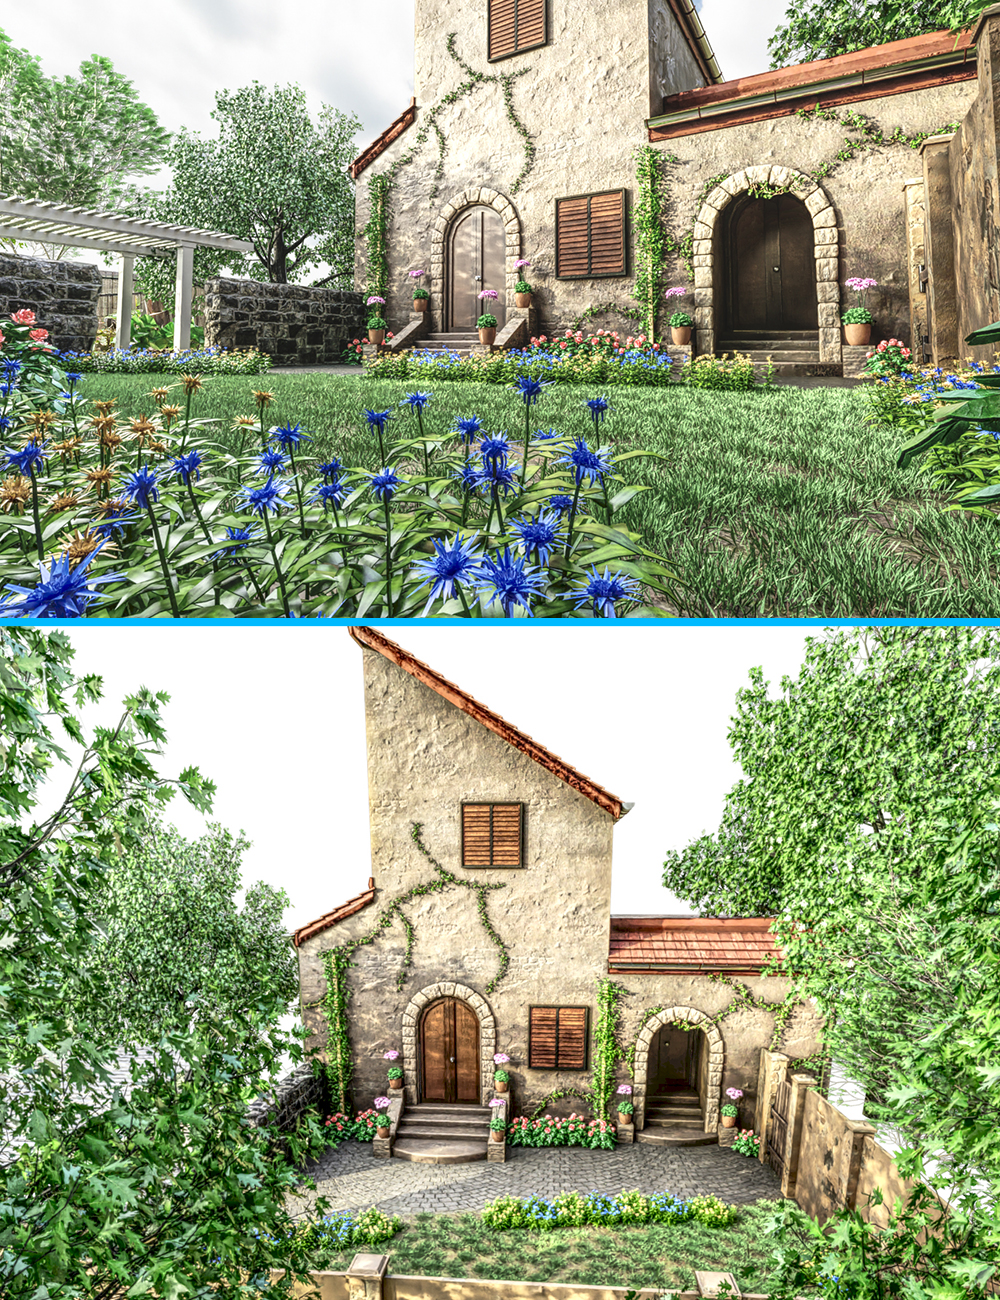 Mediterranean Backyard by: Tesla3dCorpclacydarch, 3D Models by Daz 3D